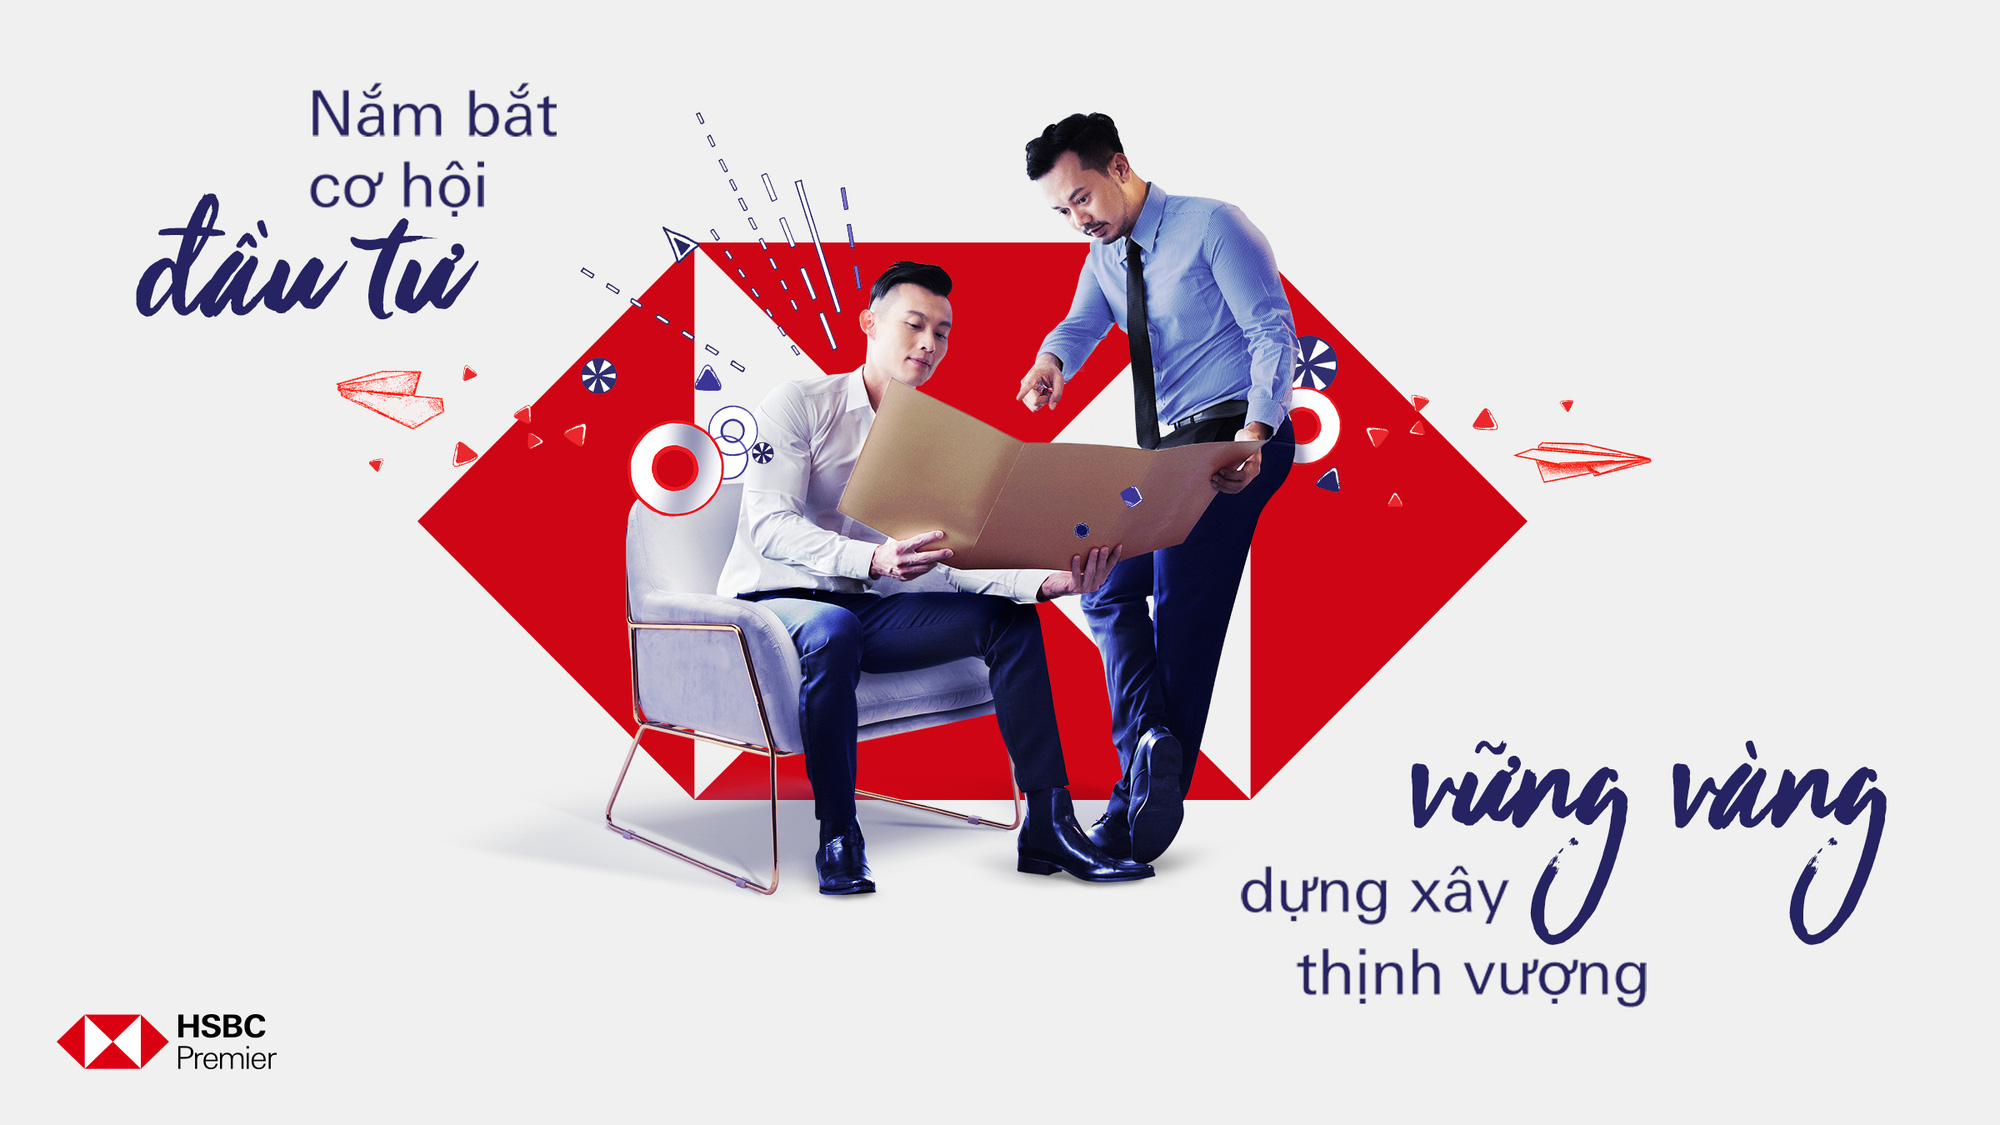 HSBC Việt Nam hợp tác cùng Quỹ VinaCapital nhằm đa dạng hóa kênh đầu tư cho khách hàng cá nhân - Ảnh 1.